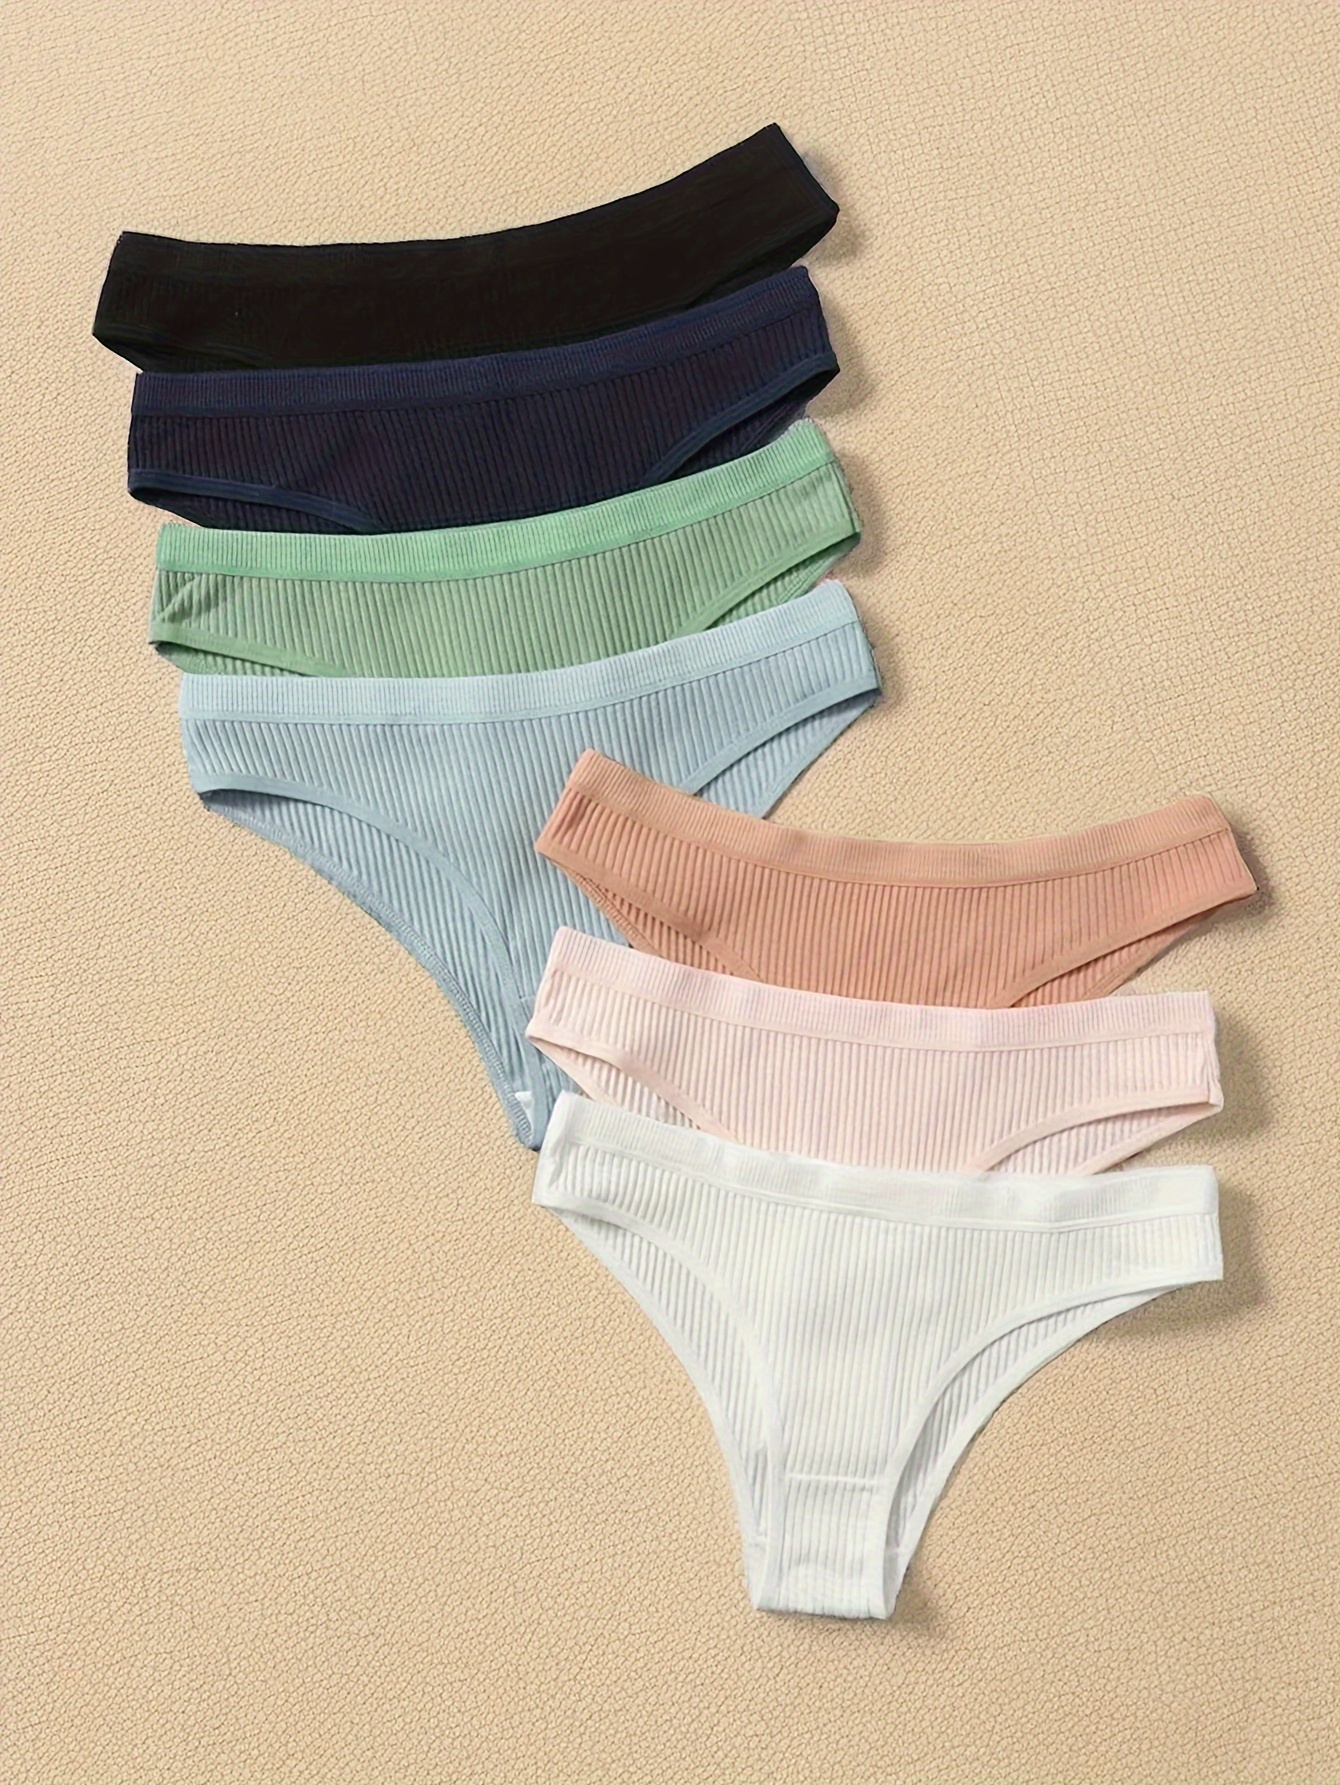 5 Pcs Soft Seamless Briefs, Breathable Wave Trim Panties, Women's Underwear  & Lingerie